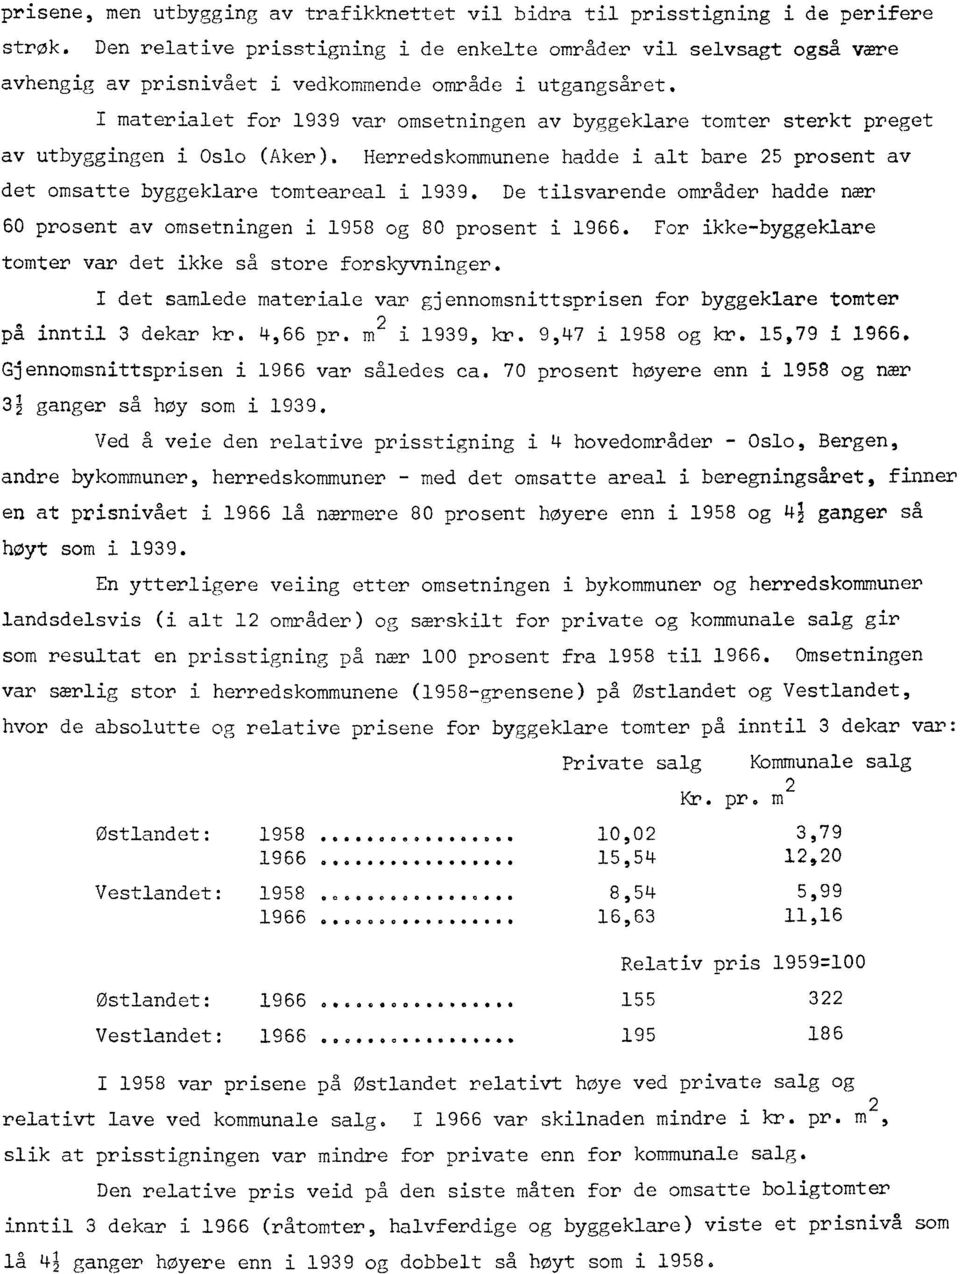 I materialet for 1939 var omsetningen av byggeklare tomter sterkt preget av utbyggingen i Oslo (Aker). Herredskommunene hadde i alt bare 25 prosent av det omsatte byggeklare tomteareal i 1939.